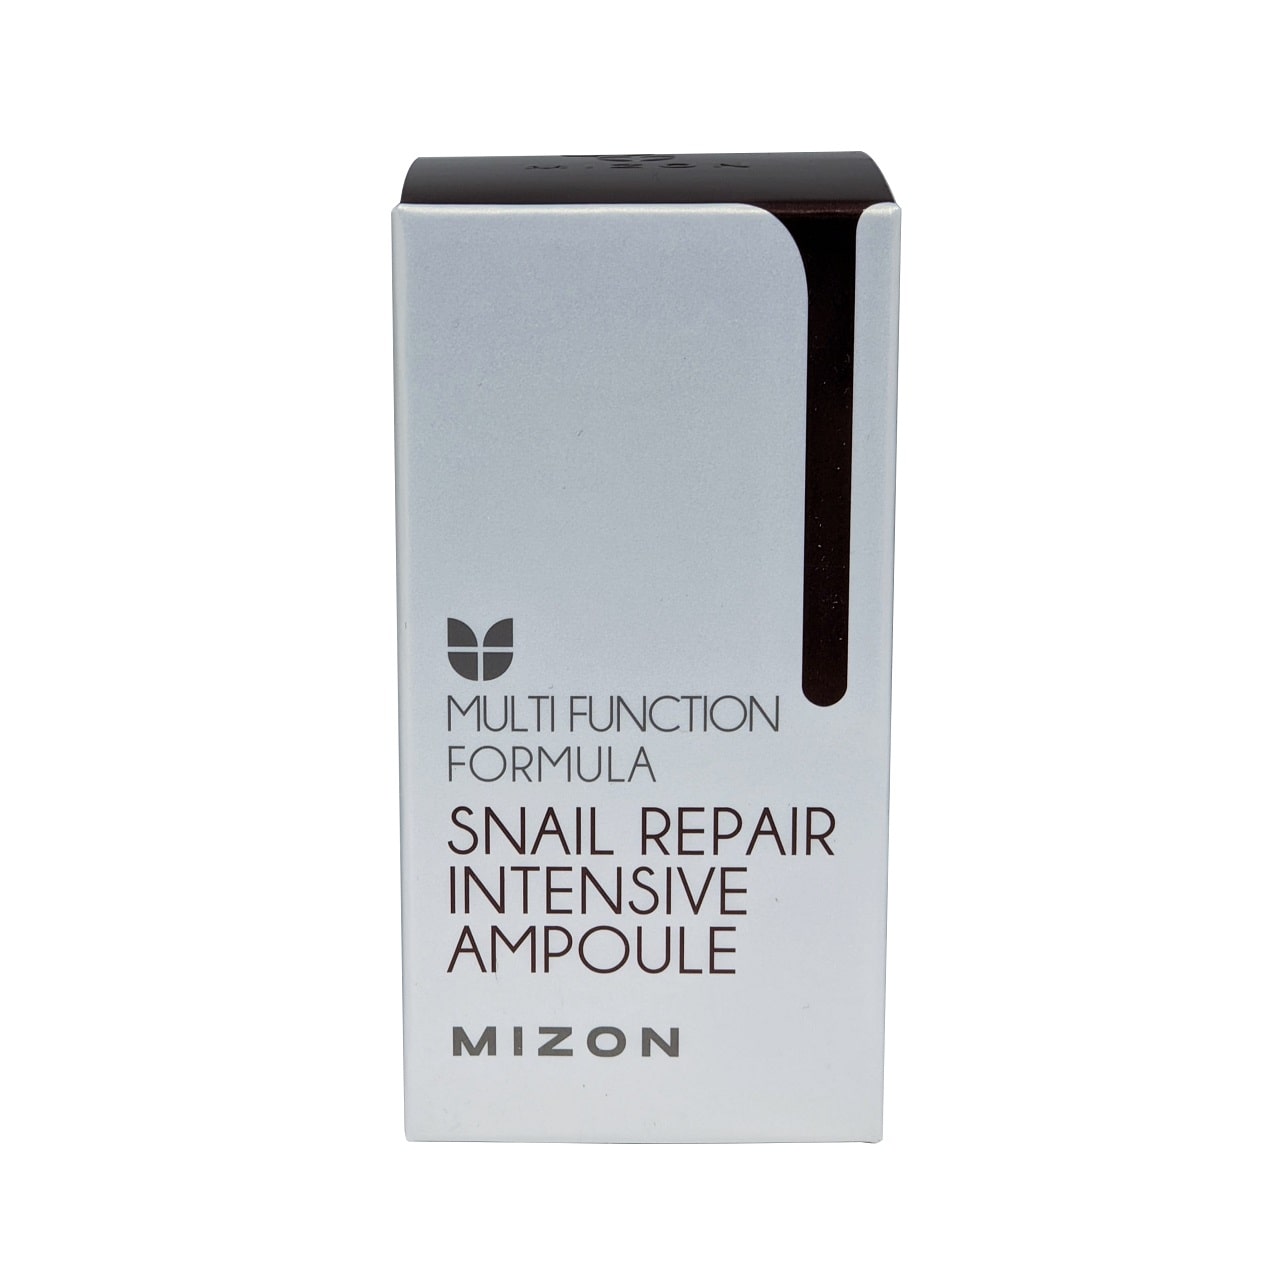 Product label for Mizon Snail Repair Intensive Ampoule